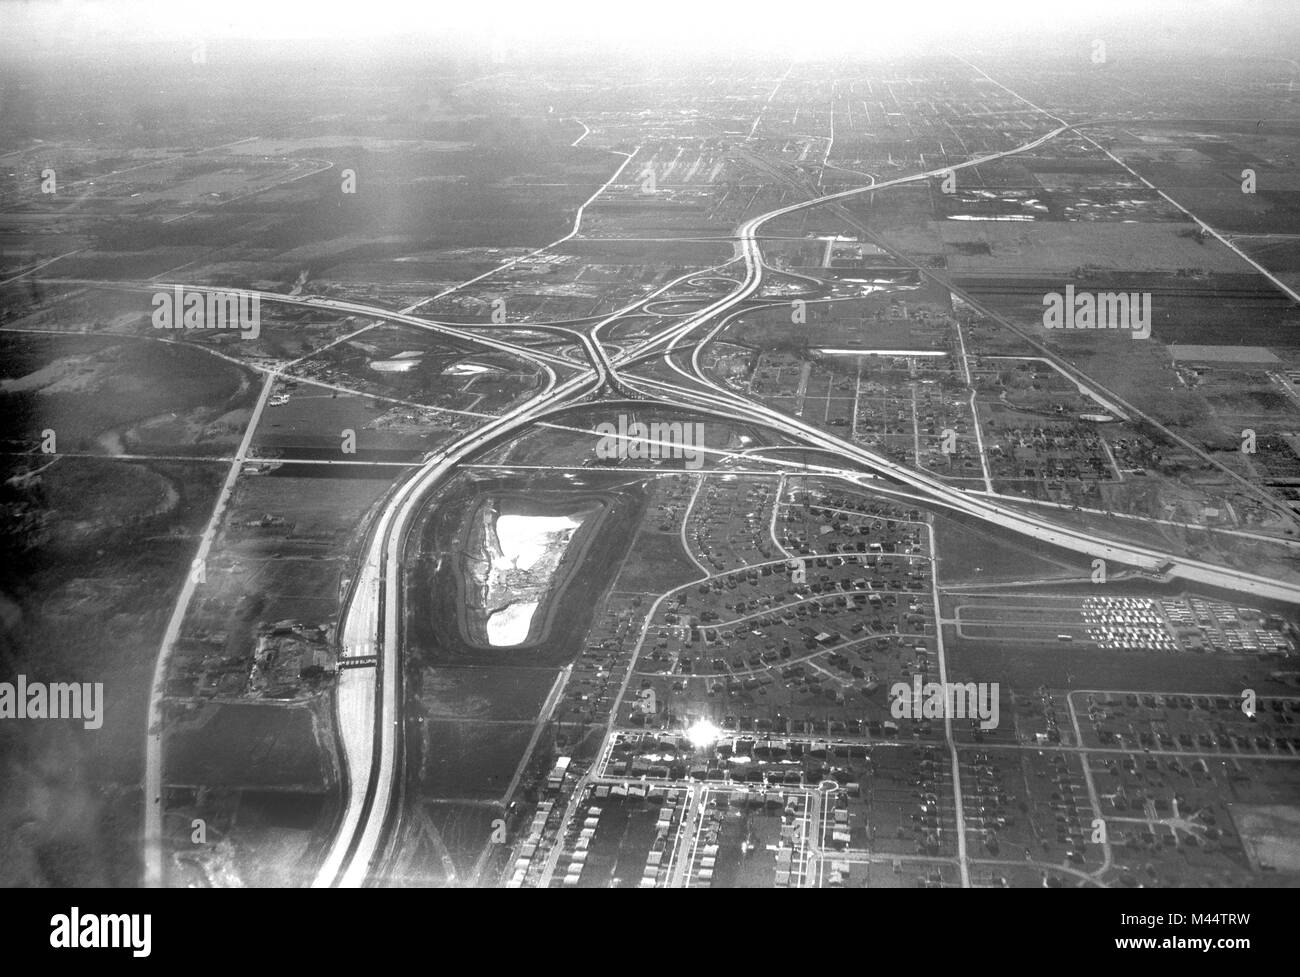 Vista aerea del tri-state tollway presso Congress Expressway, ca. 1960. Foto Stock